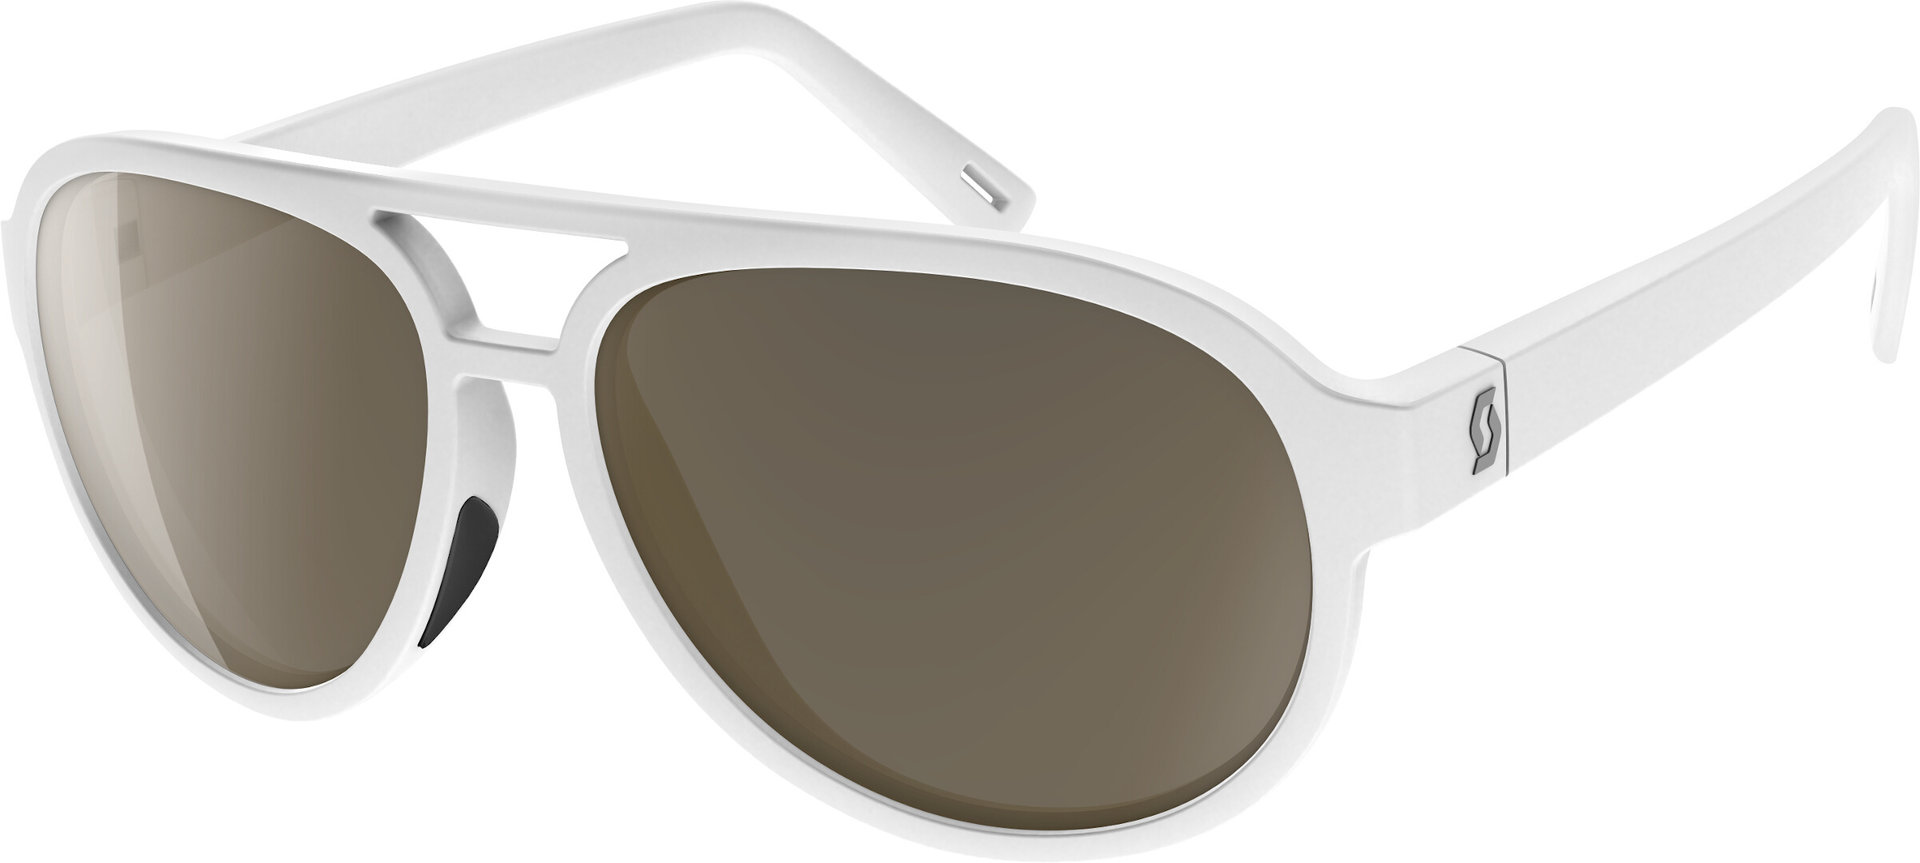 Scott Bass Sunglasses, white, white, Size One Size